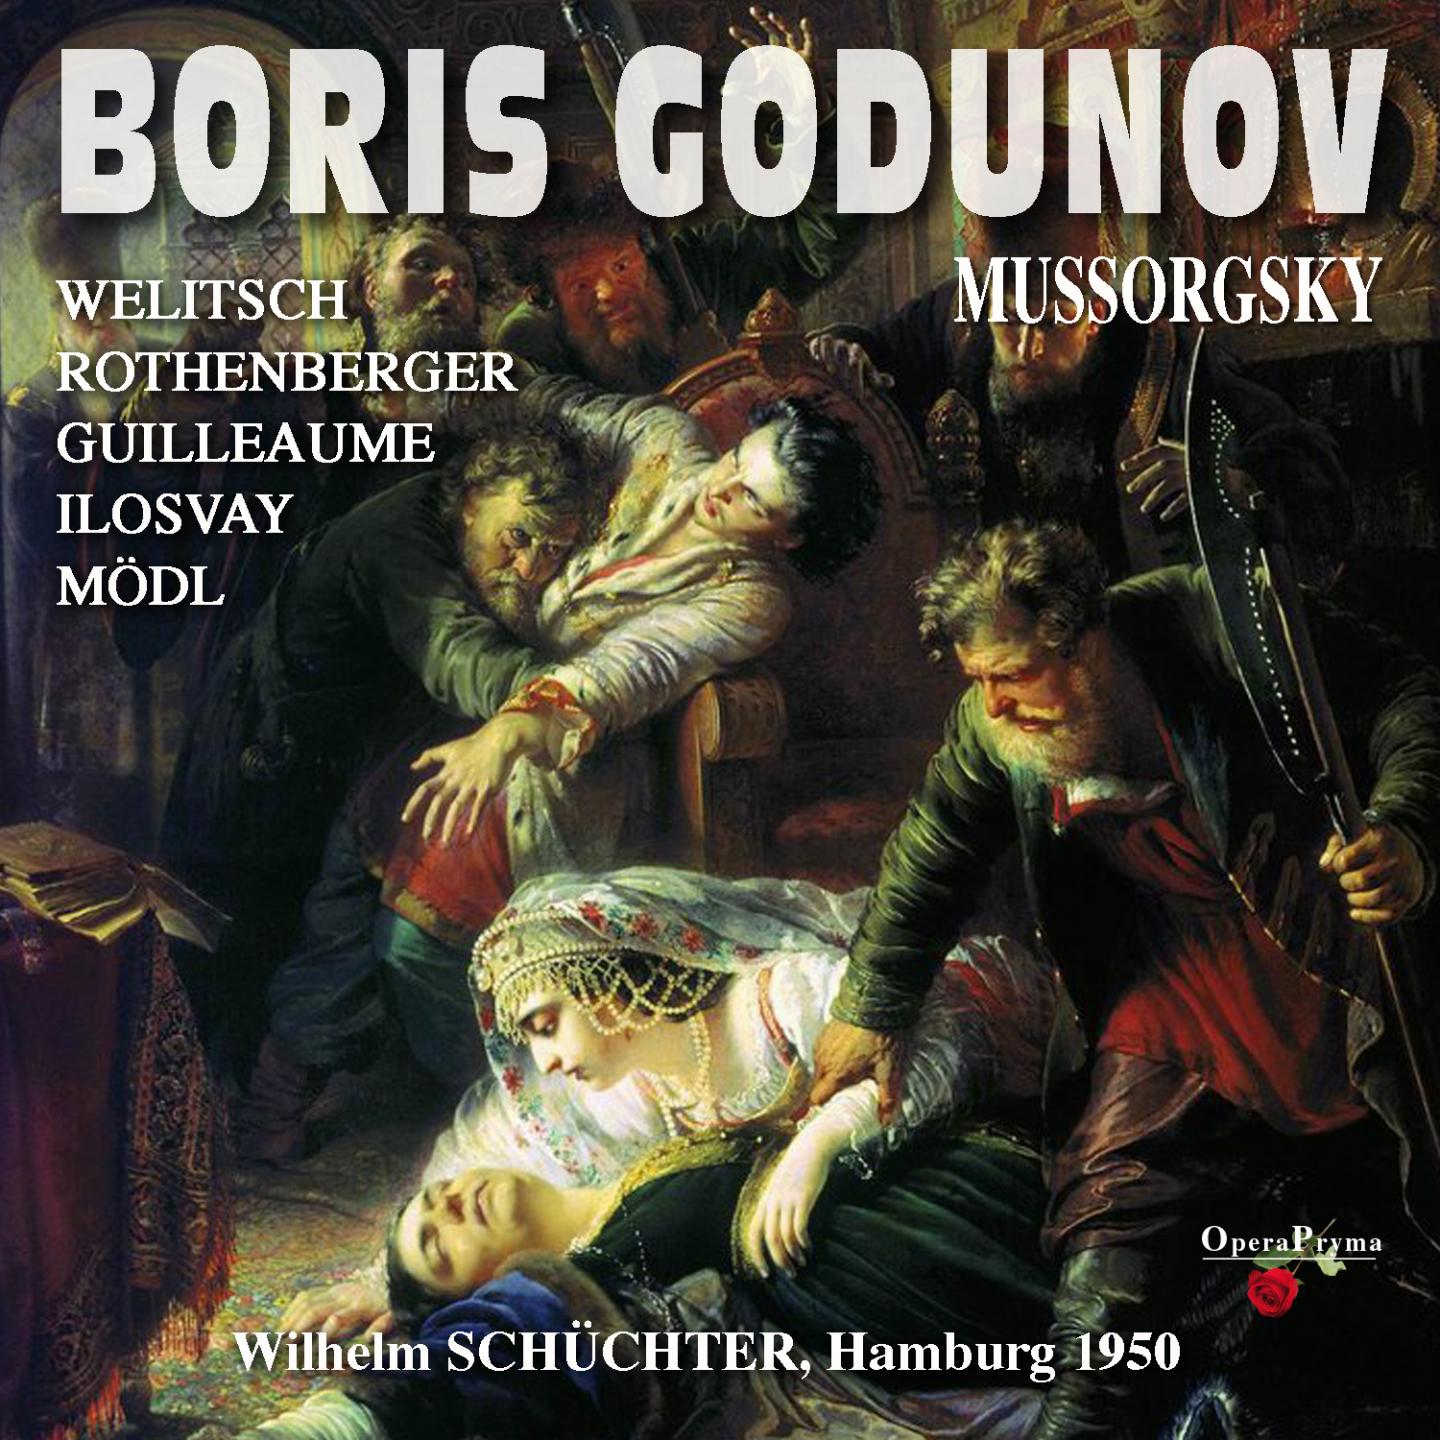 Boris Godunov, Act I, Scene 1: "Noch eine Kunde, die letzte, bleibt zu melden" (Pimen)